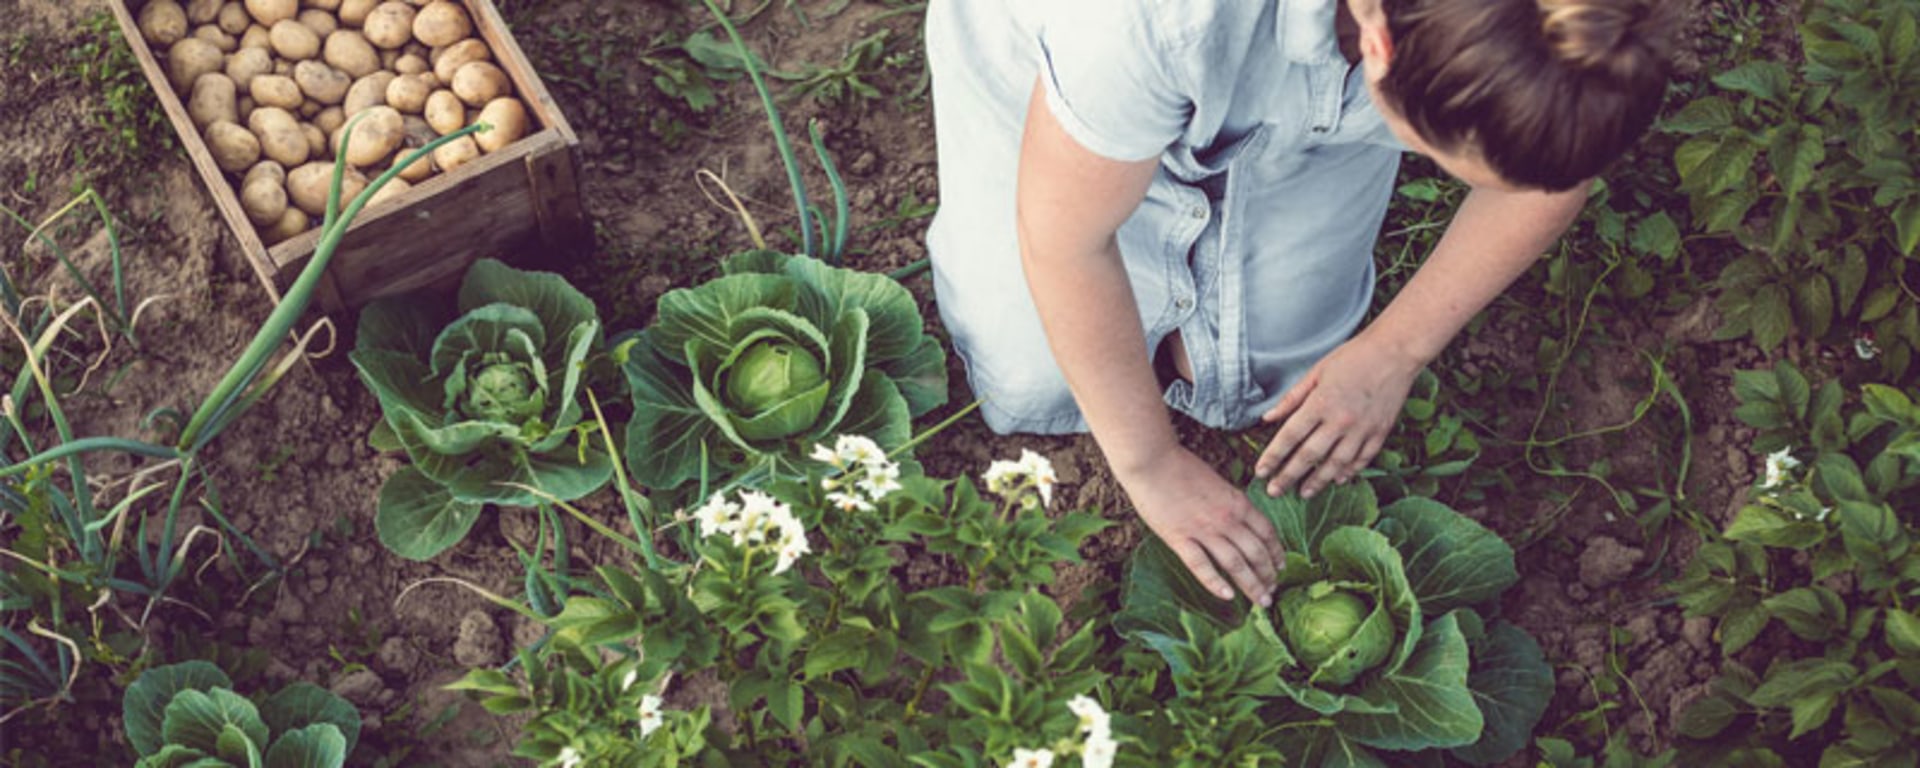 Una donna raccoglie verdure fresche dall'orto in una giornata di sole.